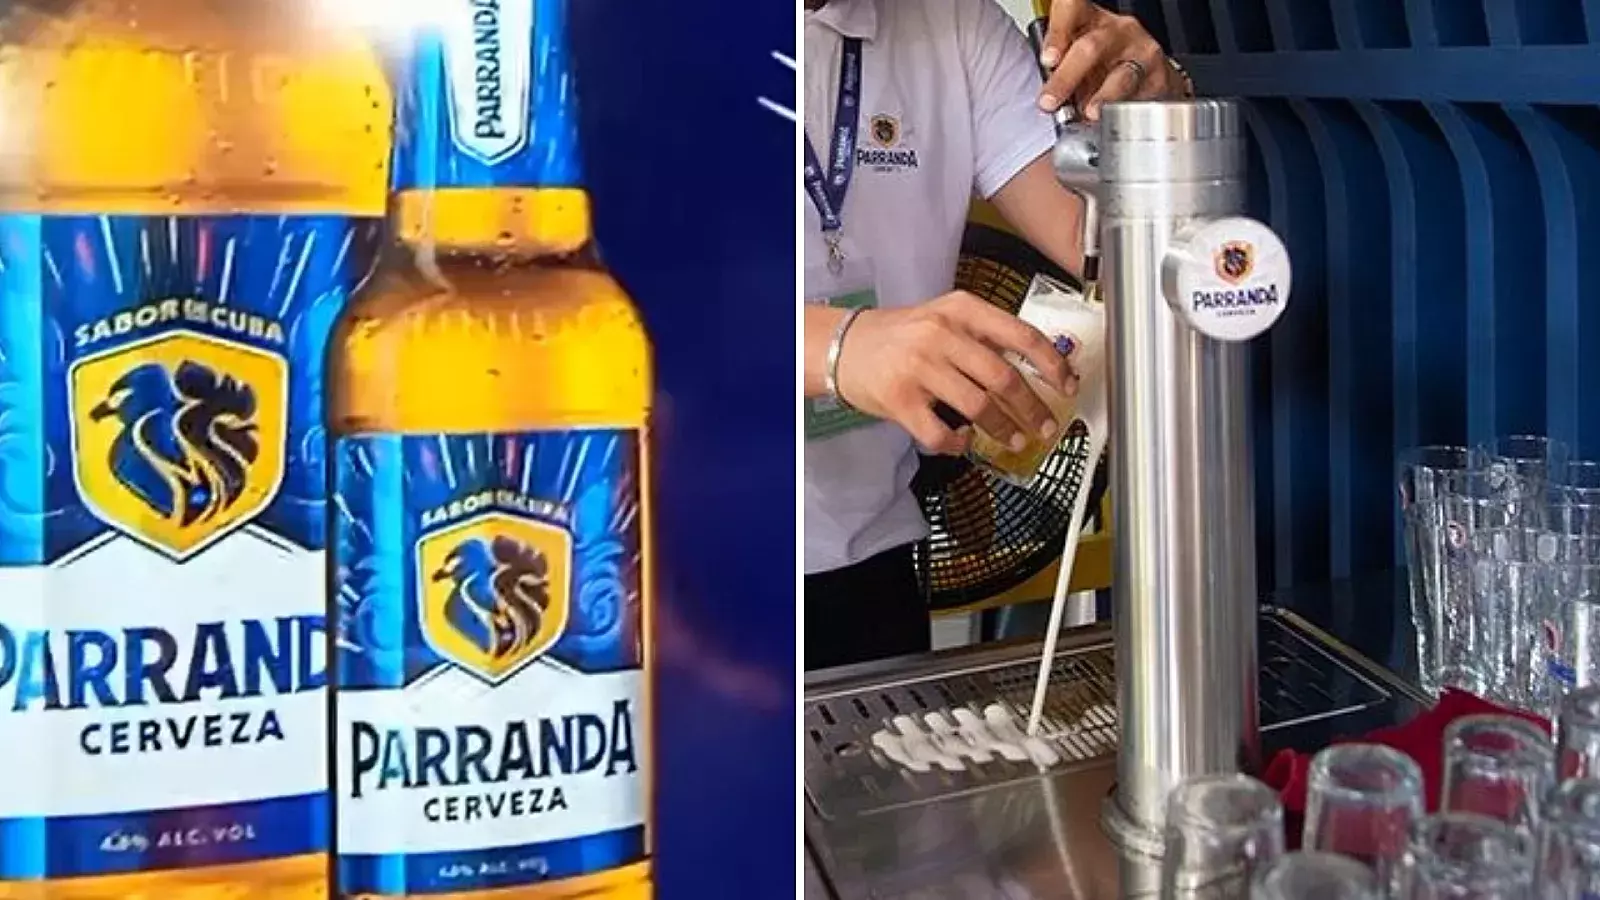 Cerveza Parranda, nueva marca en Cuba